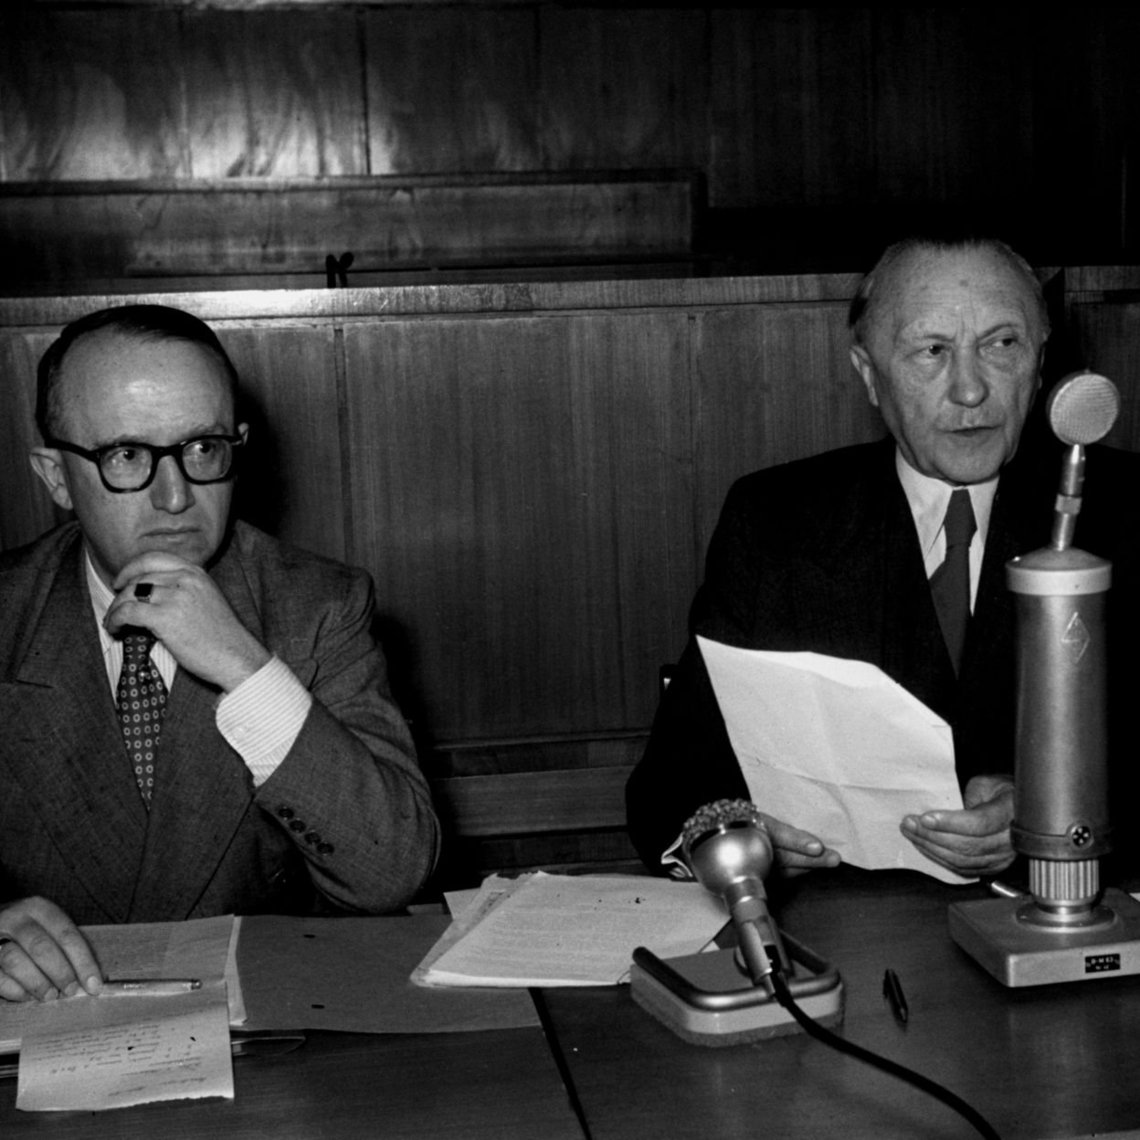 Konrad Adenauer sitzt mit Unterlagen am Mikrofon neben Walter Hallstein während einer Pressekonferenz